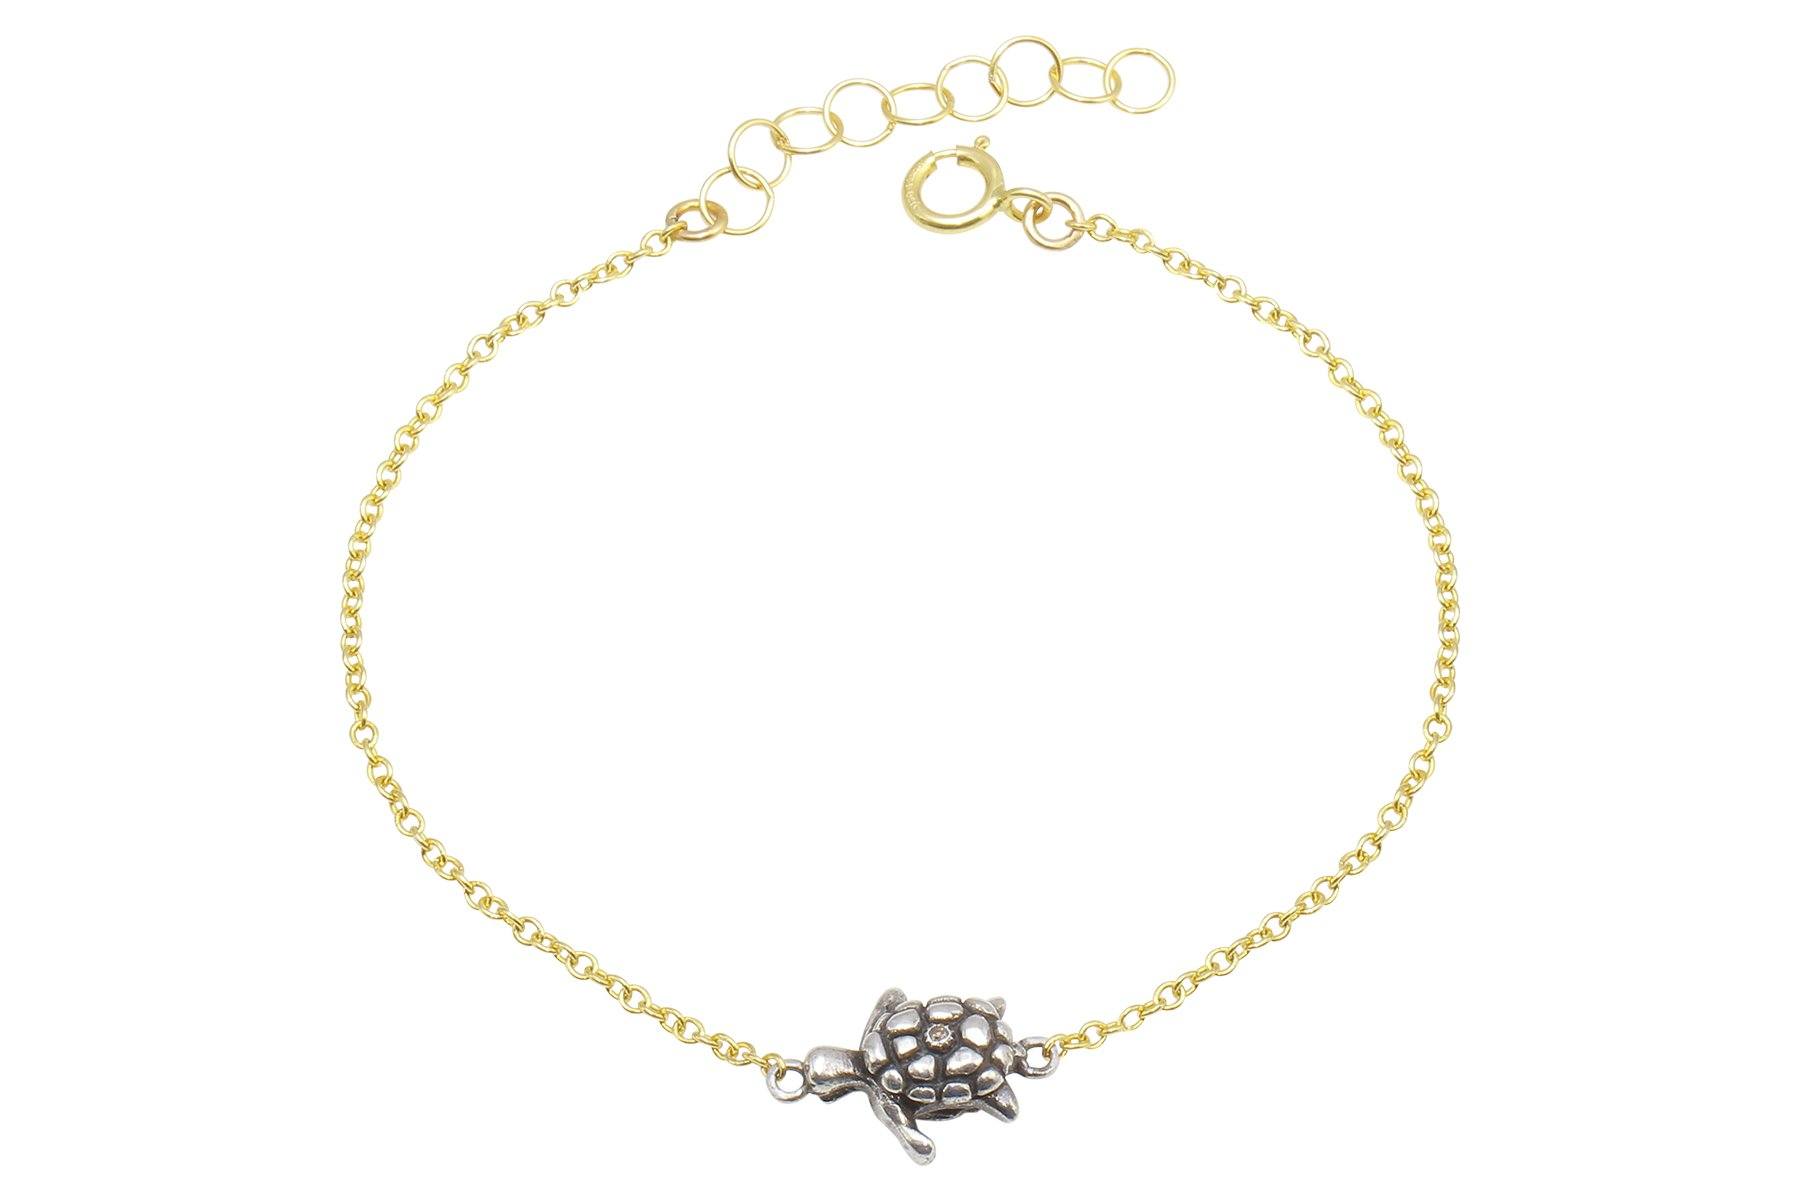 Sea Turtle Hook Bracelet Sterling Silver - FantaSea Jewelry